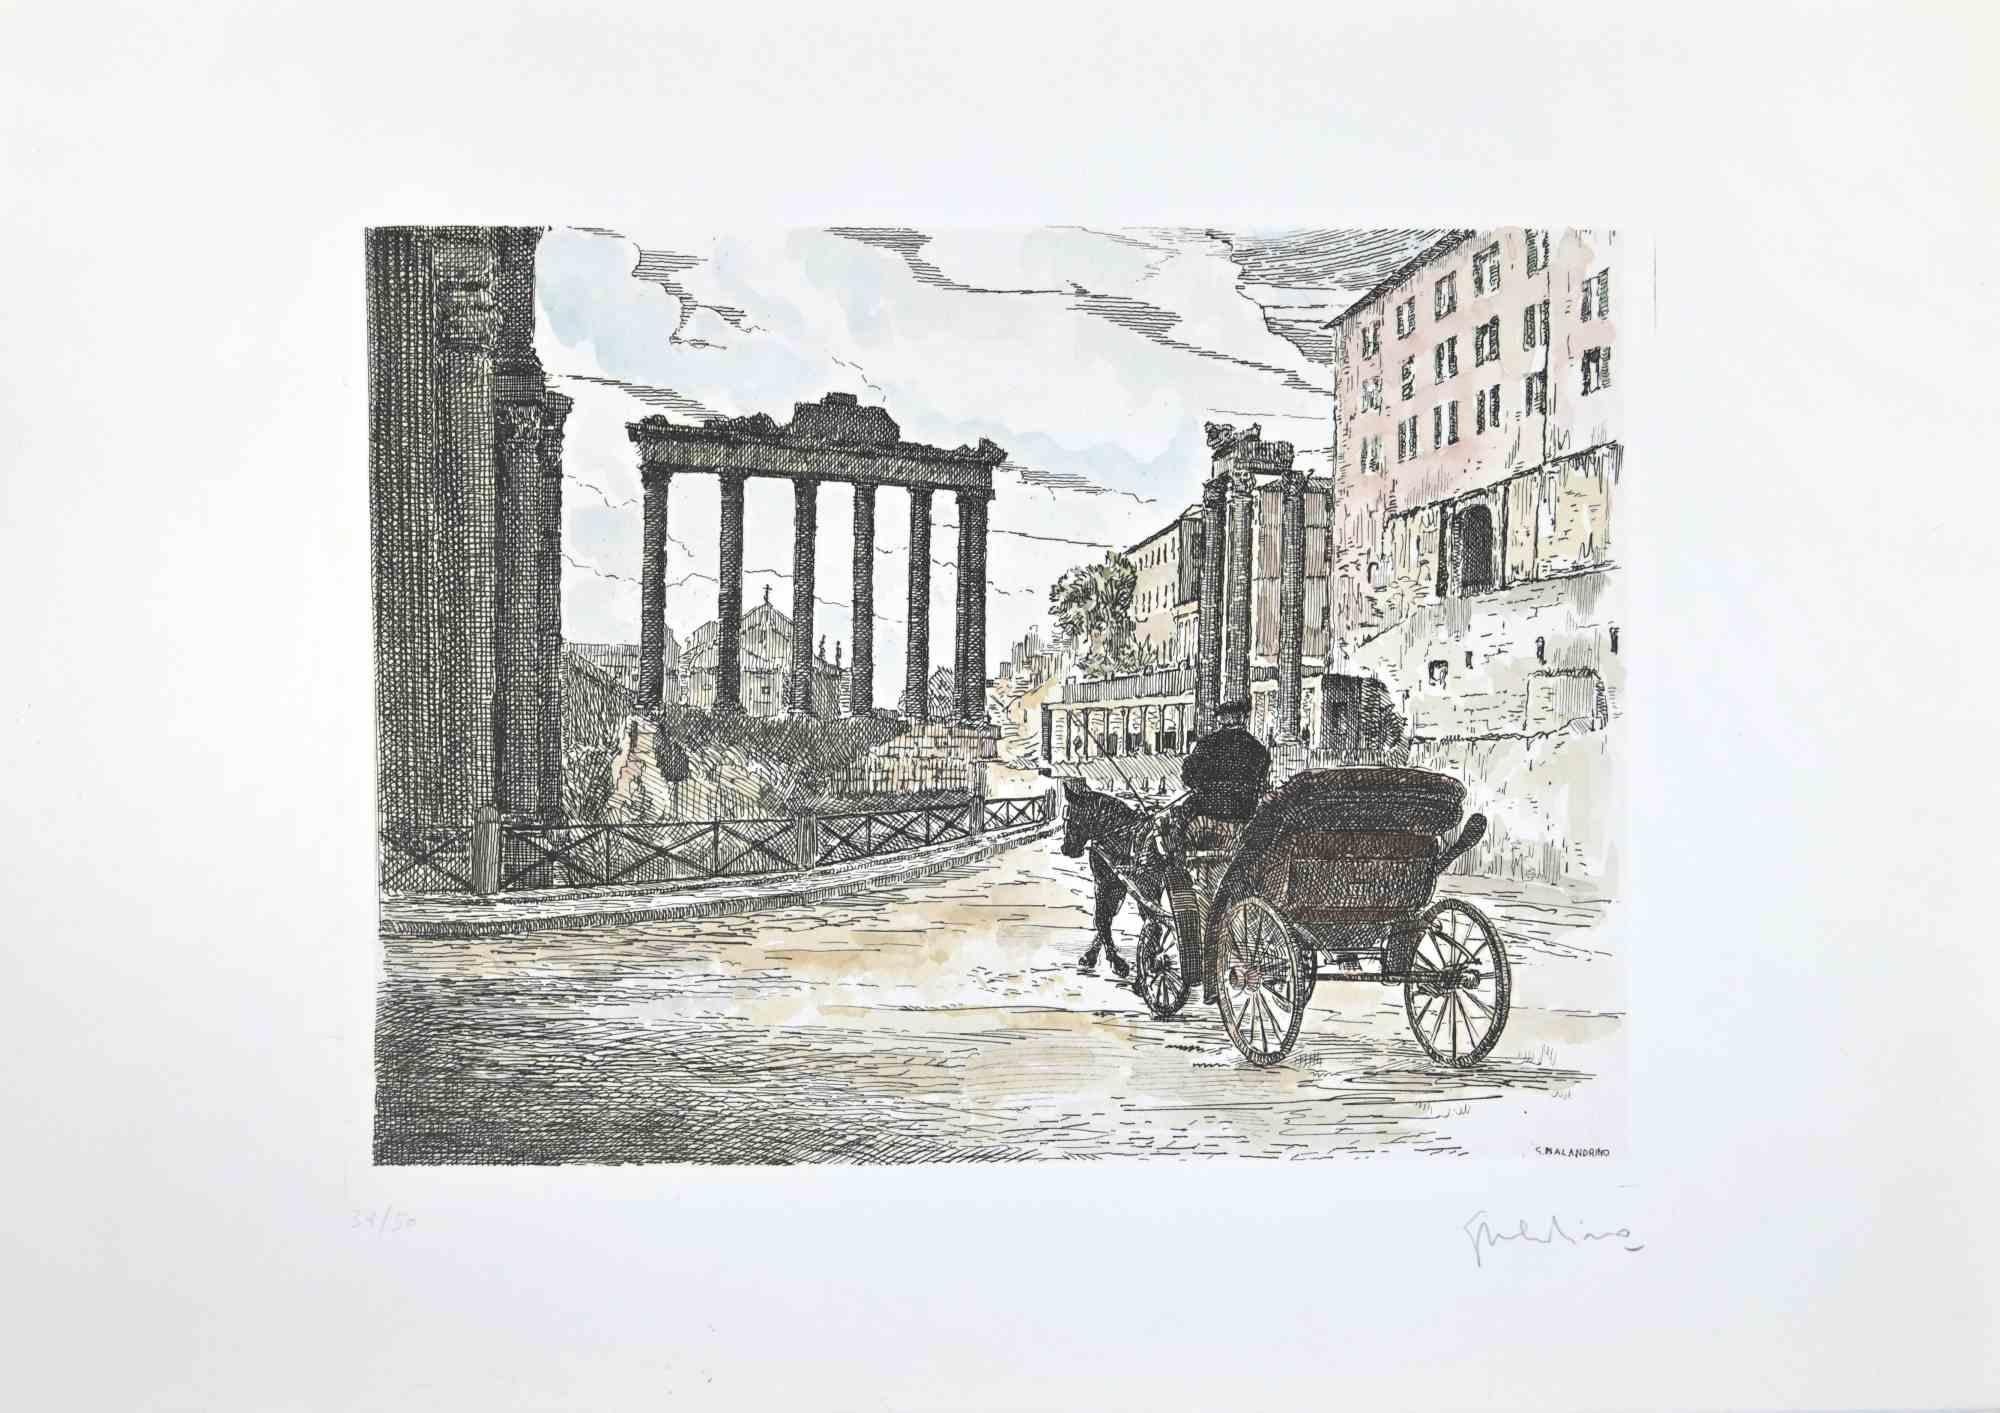 Roman Forum ist ein Kunstwerk, das von Giuseppe Malandrino realisiert wurde.

Druck in Radiertechnik und von Hand aquarelliert.

Vom Künstler in der rechten unteren Ecke mit Bleistift handsigniert.

Nummerierte Auflage,38/50.

Guter Zustand.

Dieses